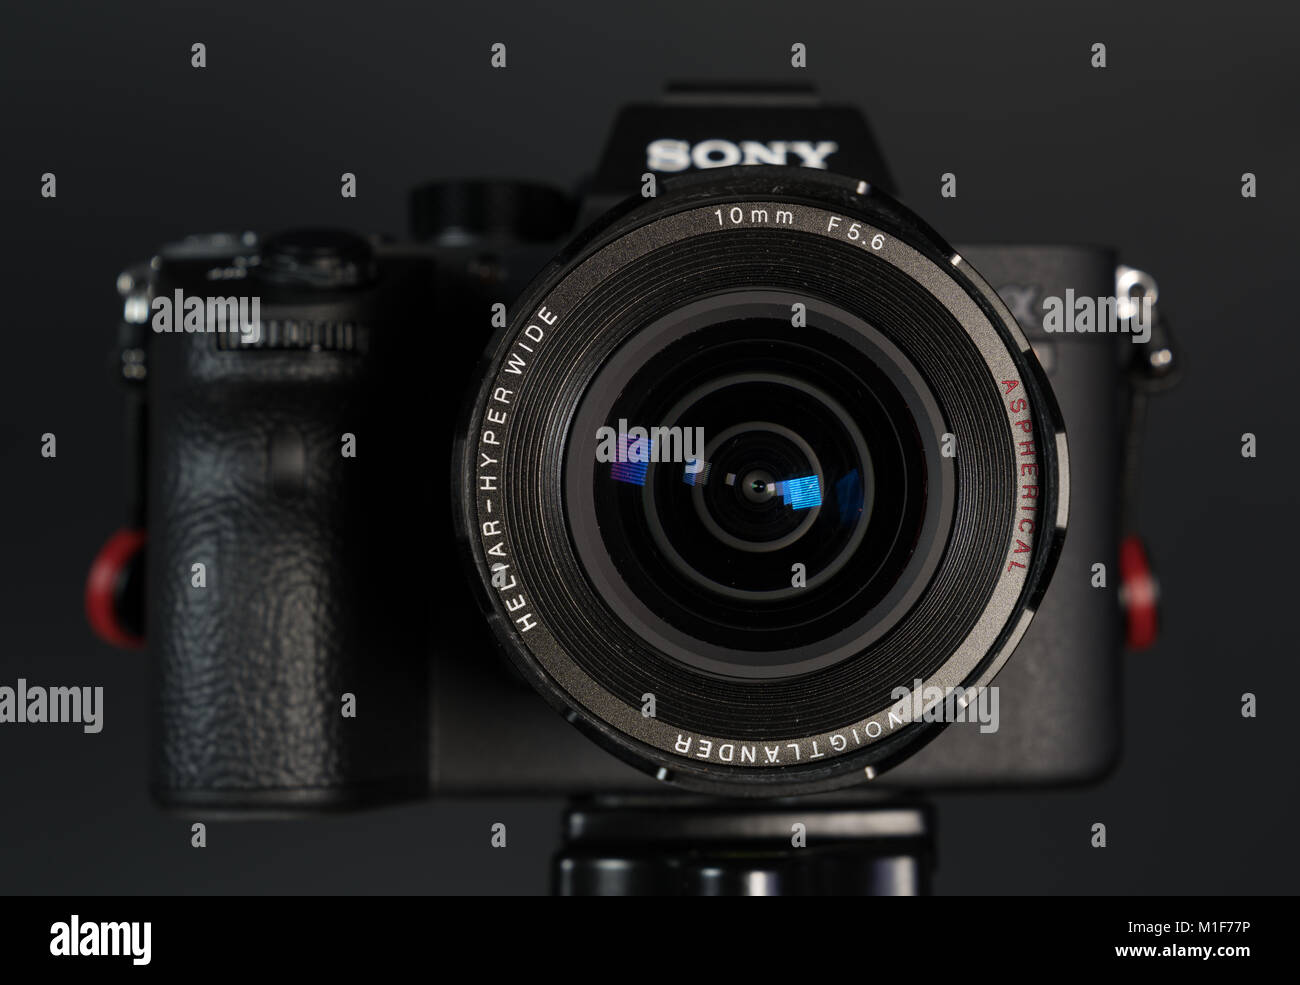 Sony, fotocamera, fotografia, fotocamere digitali, Samsung, editoriale, esemplificative mirrorless, sfondo, lente, logo, marchio, a7, elettronico, macro, alpha Foto Stock